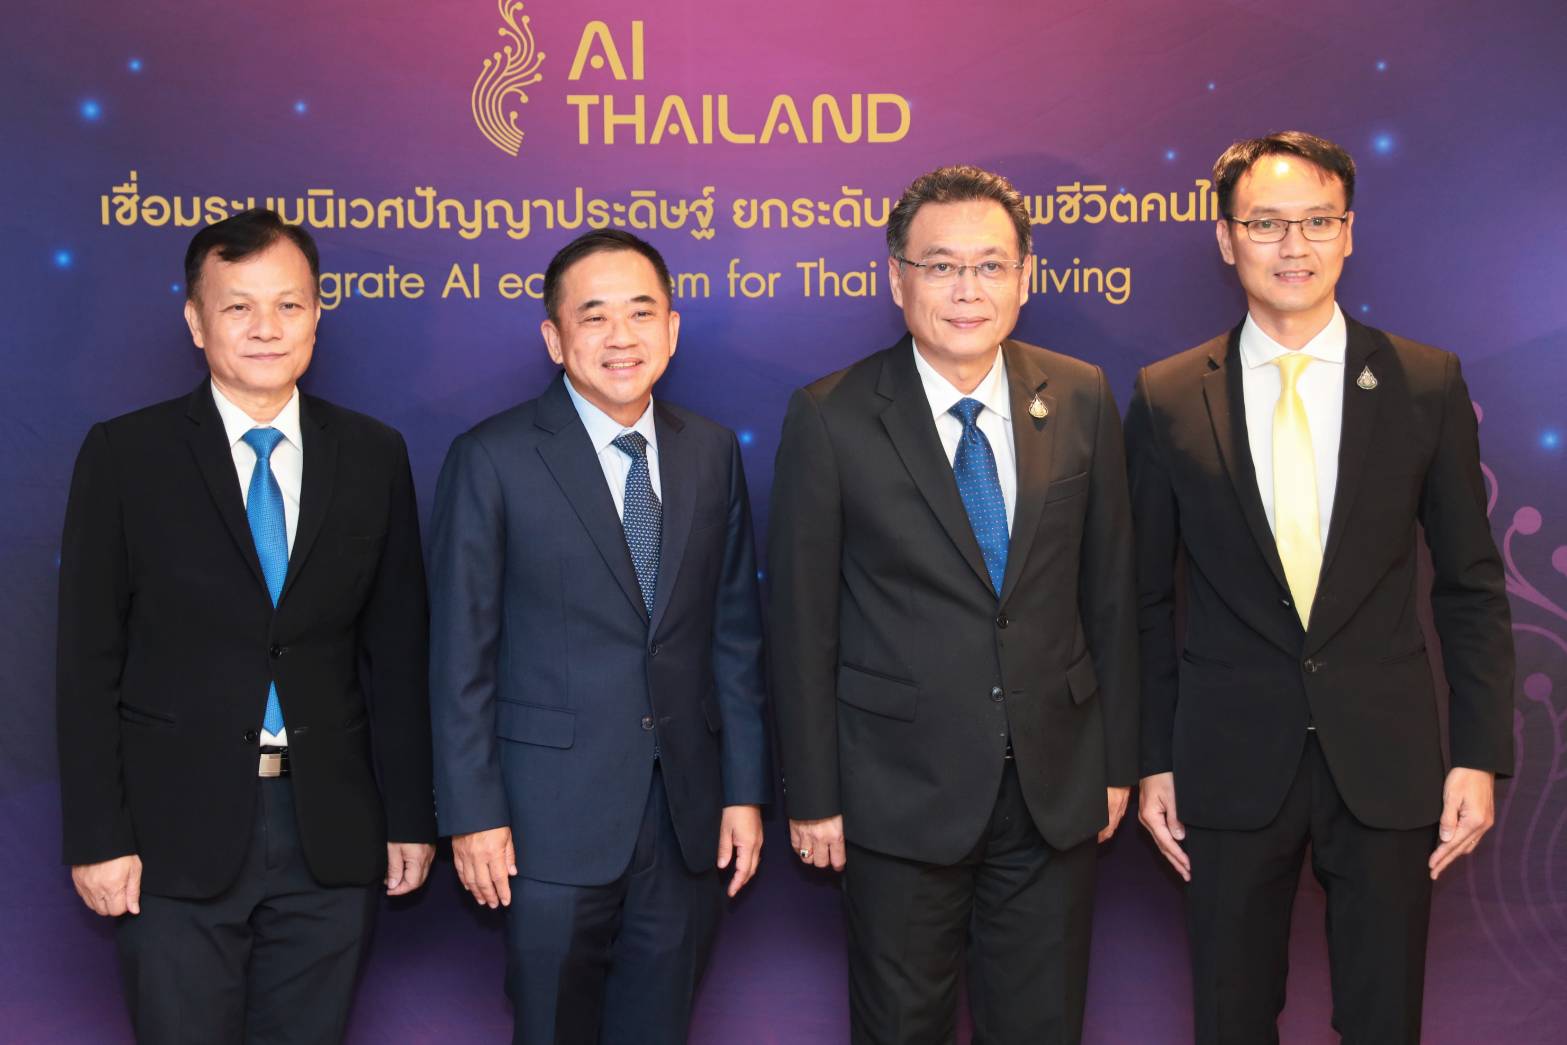 ดีอี ร่วมกับ อว. เดินหน้าผลักดันโครงการนำร่องภายใต้การขับเคลื่อนแผนปฏิบัติการด้านปัญญาประดิษฐ์แห่งชาติ (AI Thailand) เชื่อมระบบนิเวศปัญญาประดิษฐ์ ยกระดับคุณภาพชีวิตคนไทย